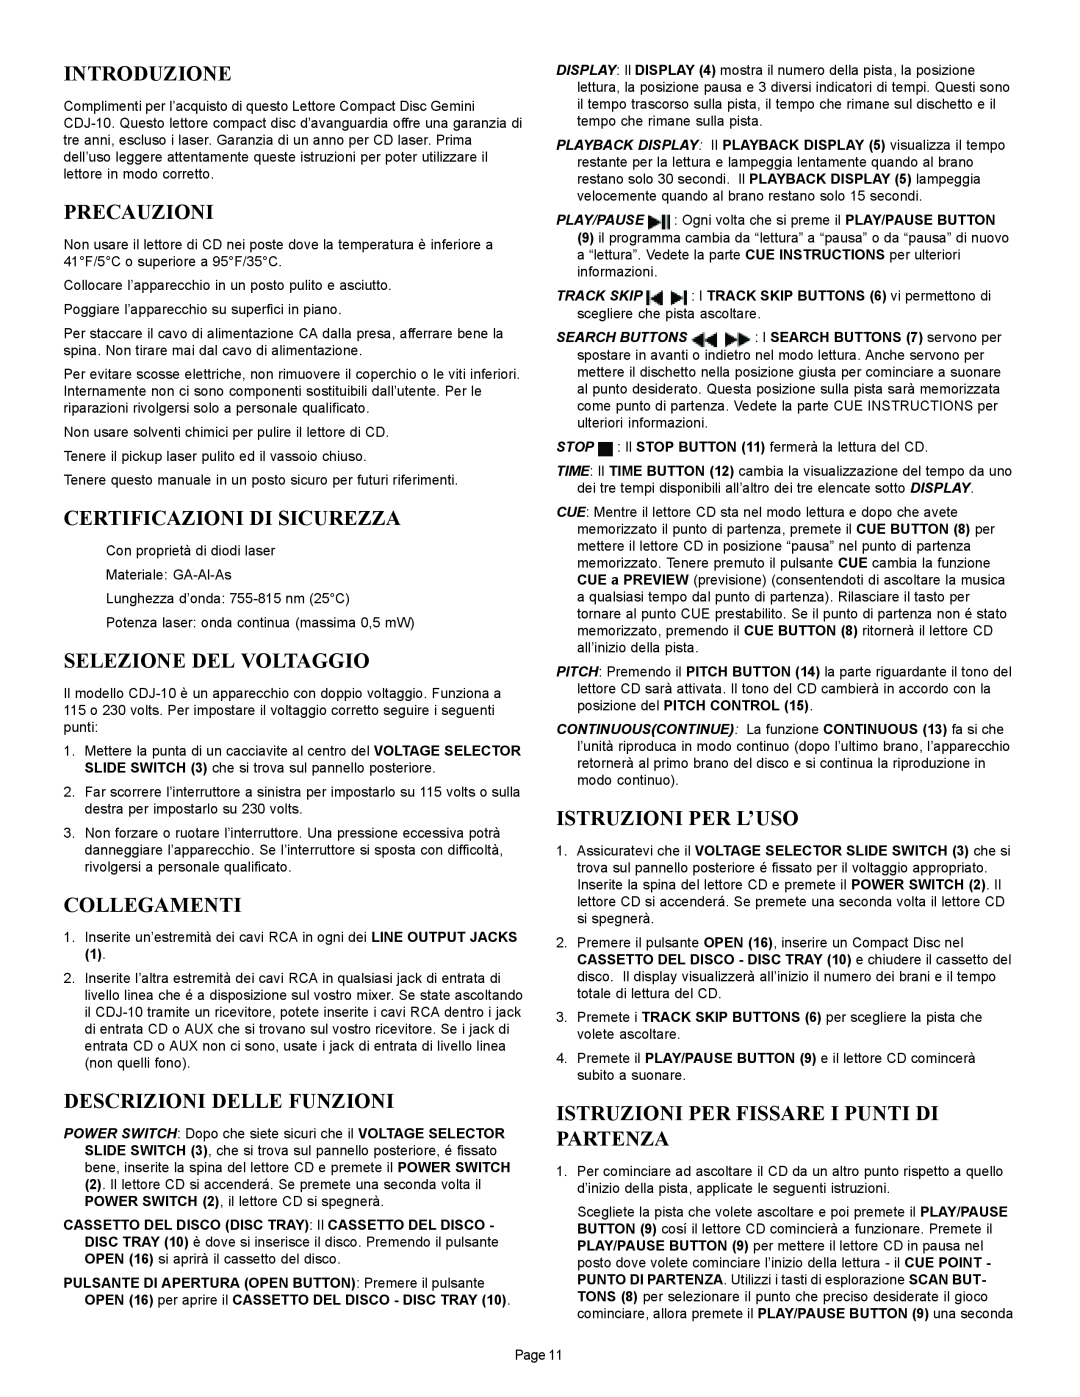 Gemini CDJ-10 manual Introduzione, Precauzioni, Certificazioni Di Sicurezza, Selezione Del Voltaggio, Collegamenti 